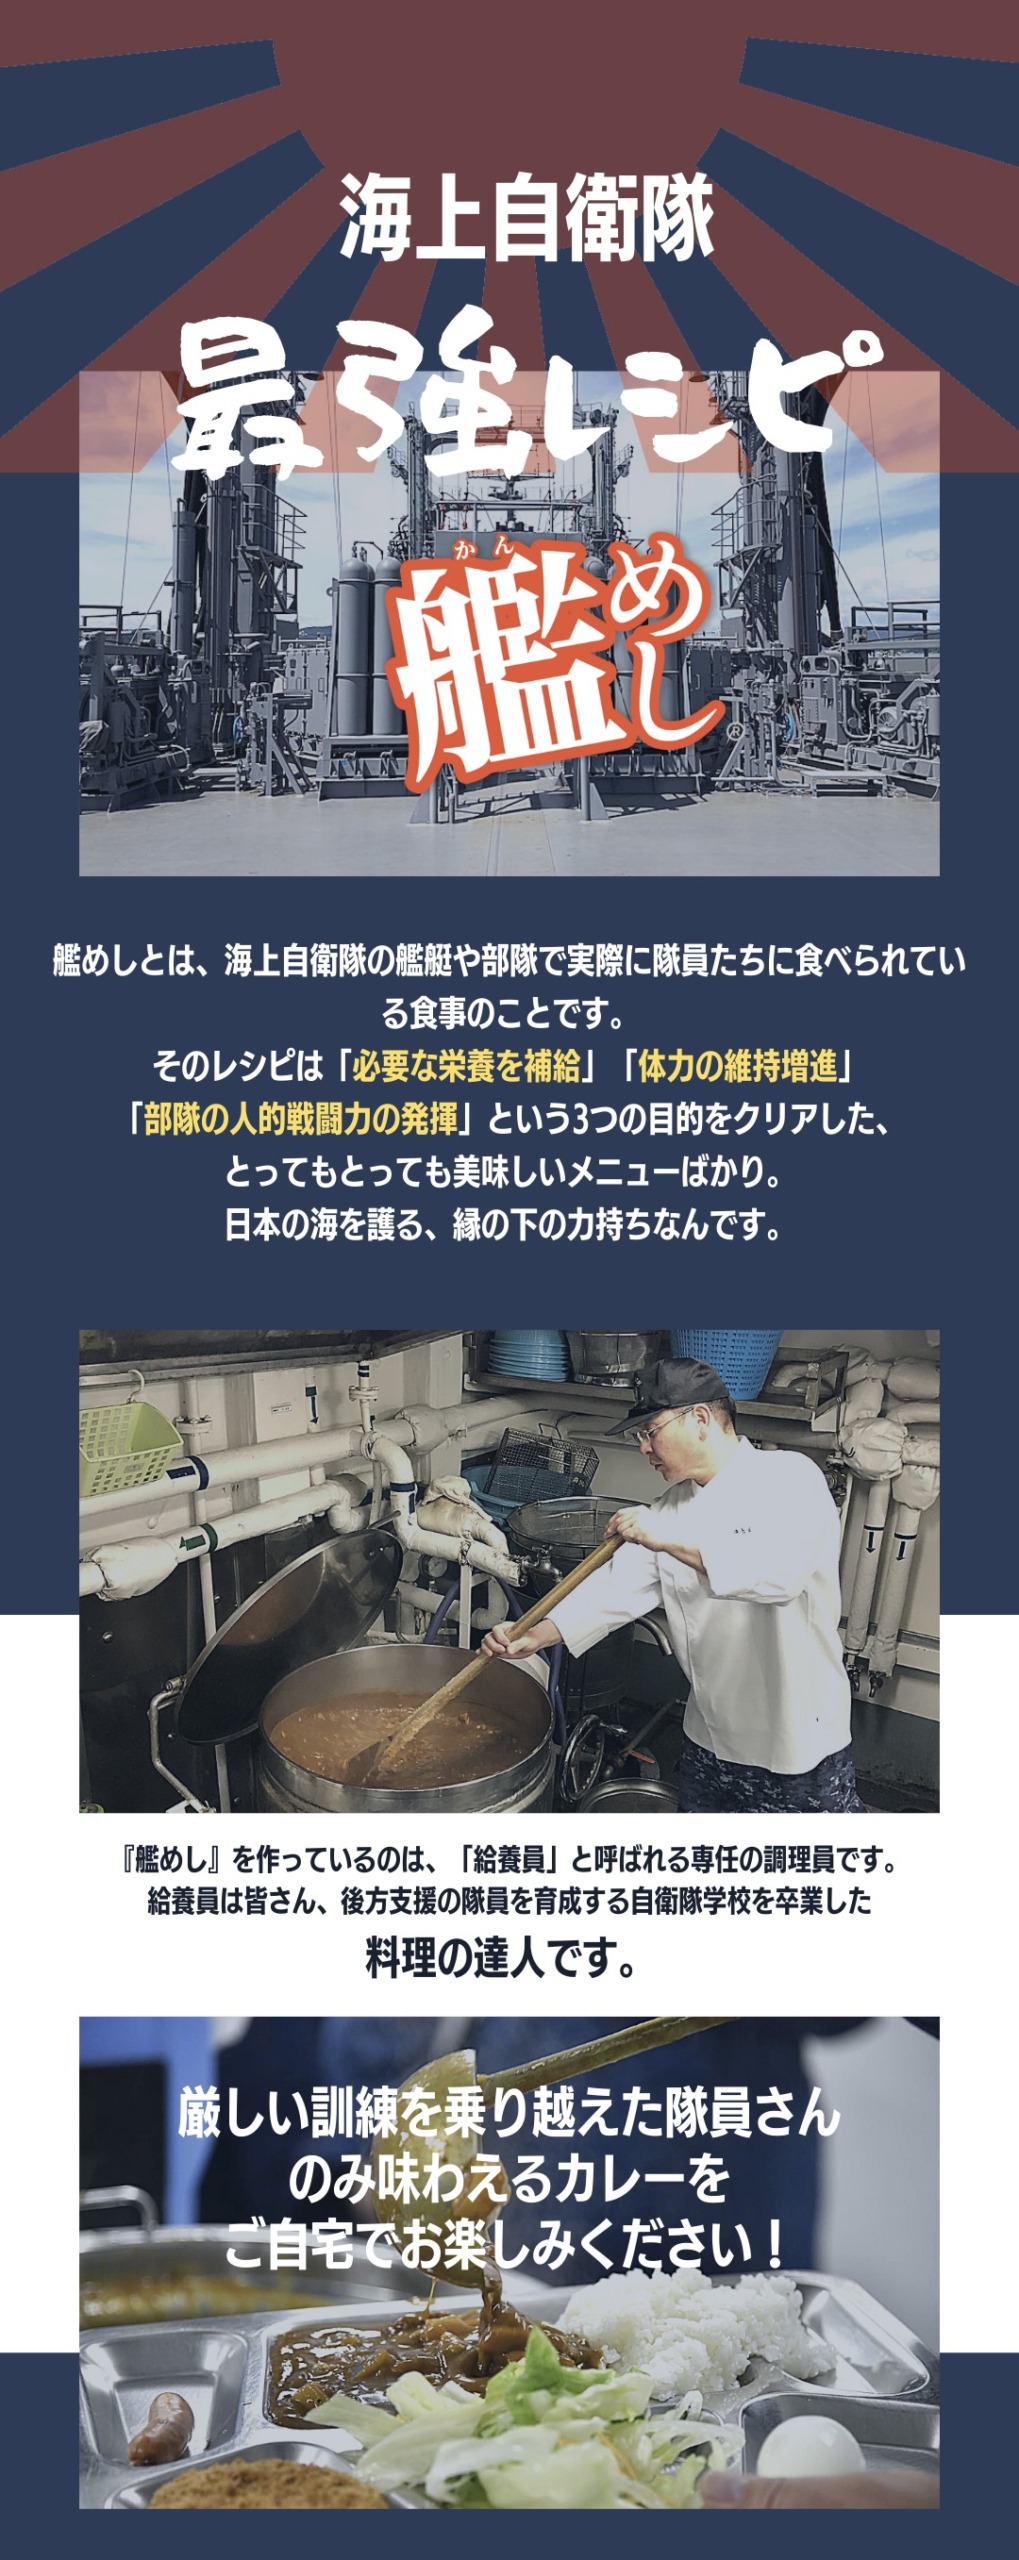 艦めし】護衛艦かが特製ポテトバターチキンのトマトカレー(呉) | BBマーケット